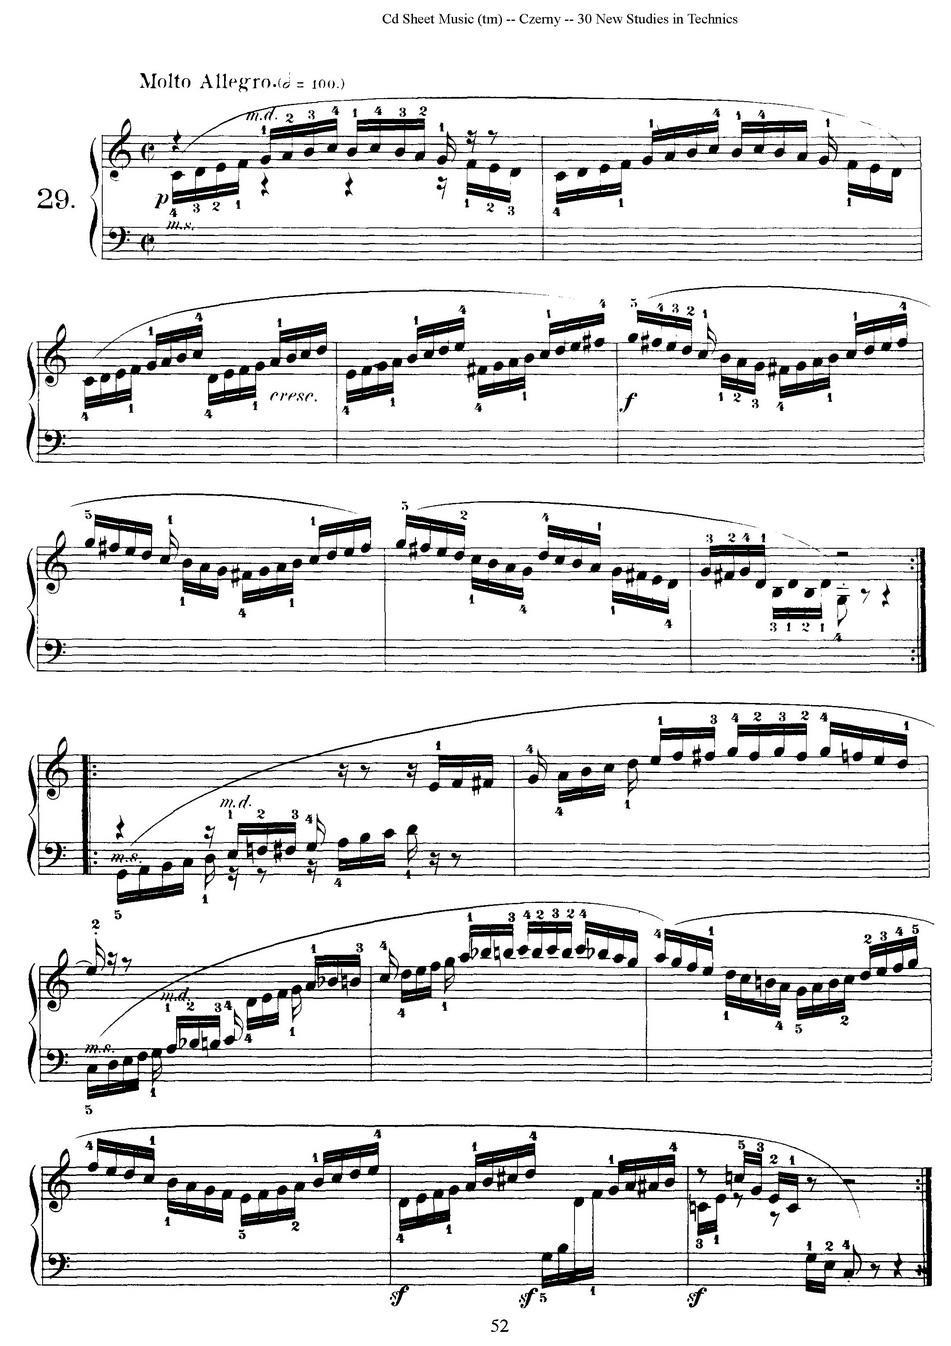 Czerny - 30 New Studies - 29（车尔尼Op849 - 30首练习曲）(1).jpg